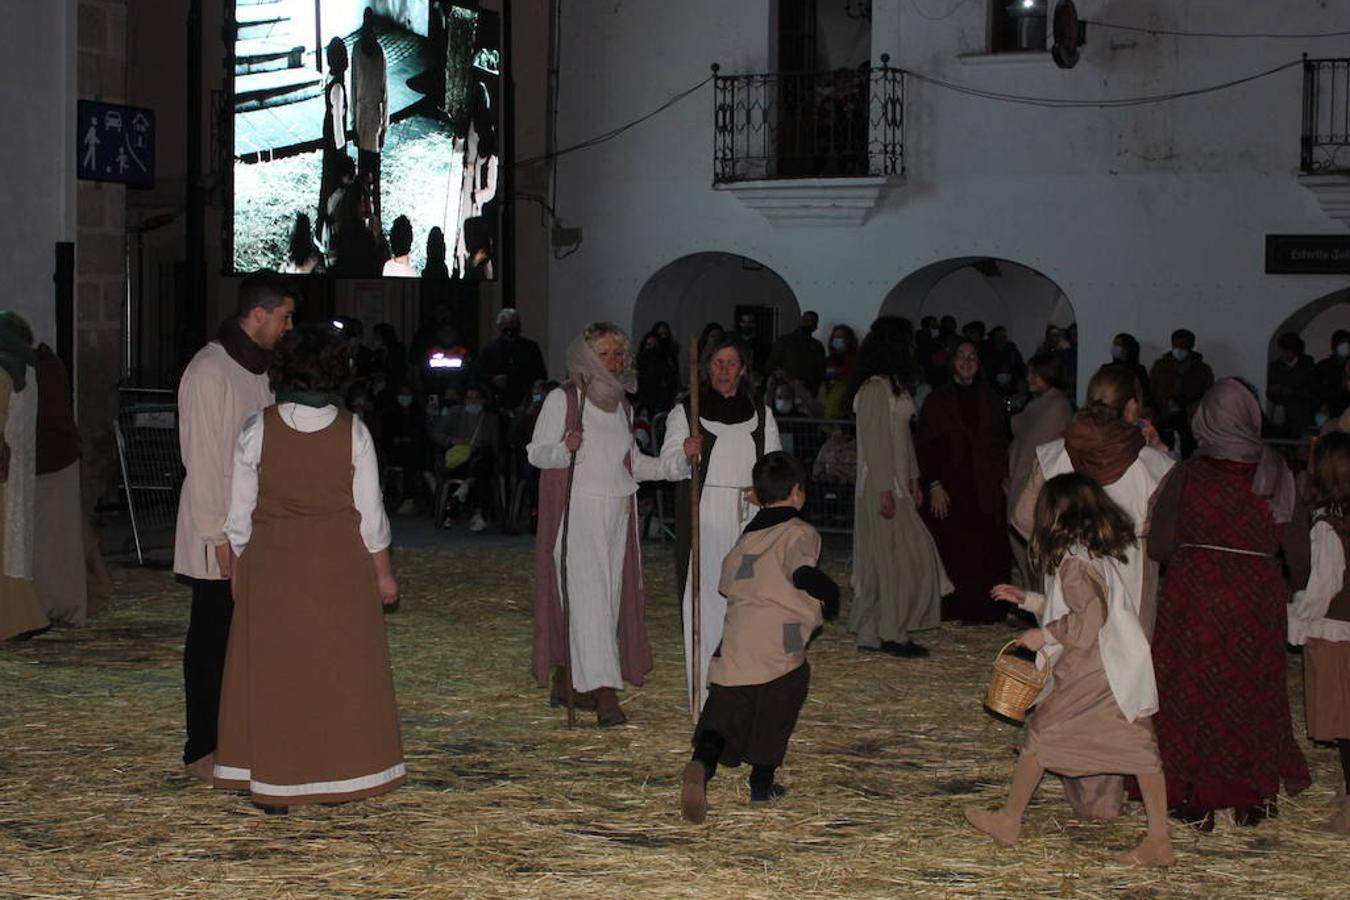 Casar de Cáceres celebra actos en honor a Sancho IV